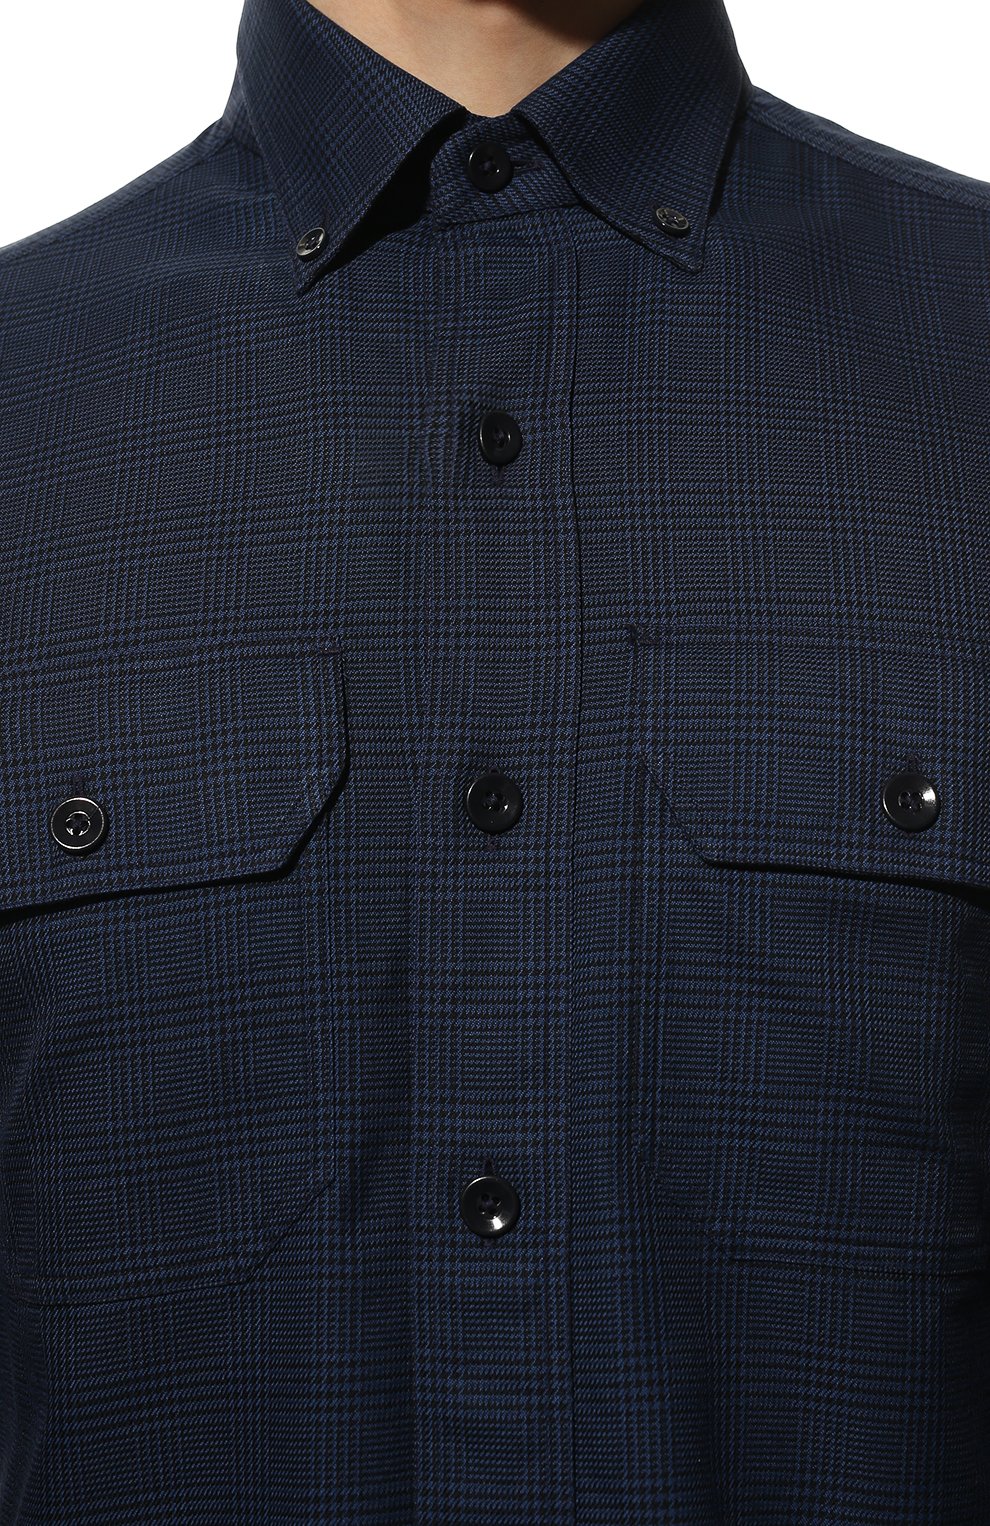 Мужская хлопковая рубашка TOM FORD темно-синего цвета, арт. 3FT241/94UDAN | Фото 5 (Манжеты: На пуговицах; Воротник: Button down; Рукава: Длинные; Случай: Повседневный; Длина (для топов): Стандартные; Рубашки М: Slim Fit; Материал внешний: Хлопок; Принт: Однотонные; Стили: Кэжуэл)